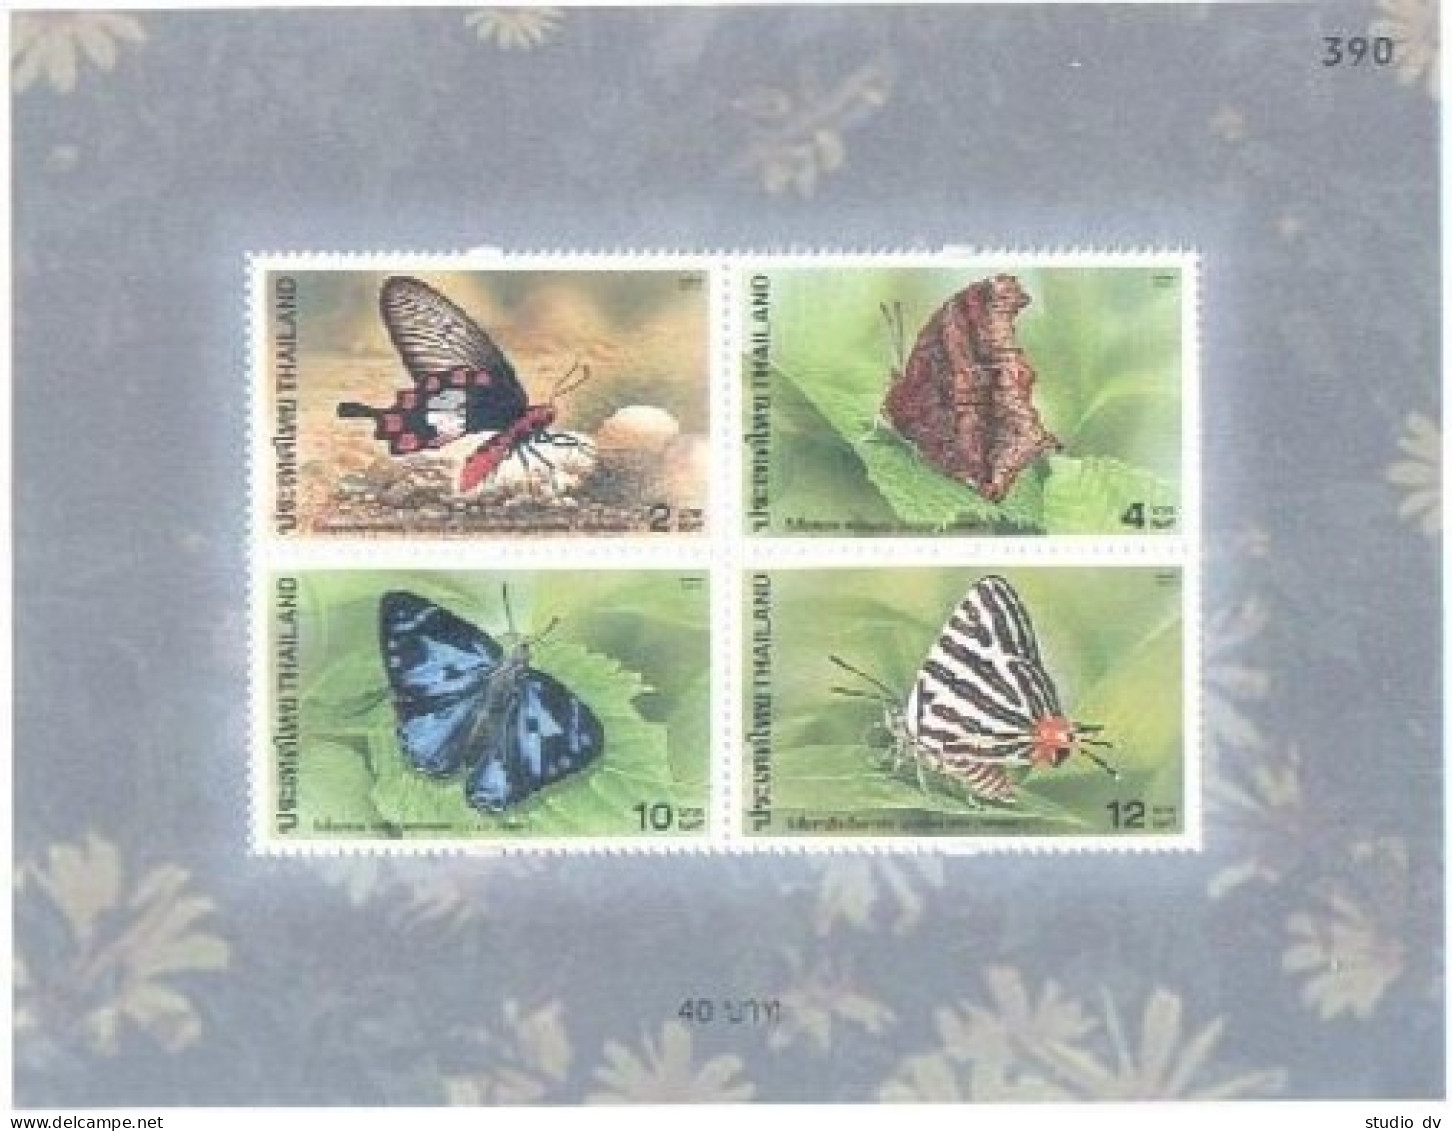 Thailand 1995a Sheet,MNH. Butterflies 2001. - Thailand